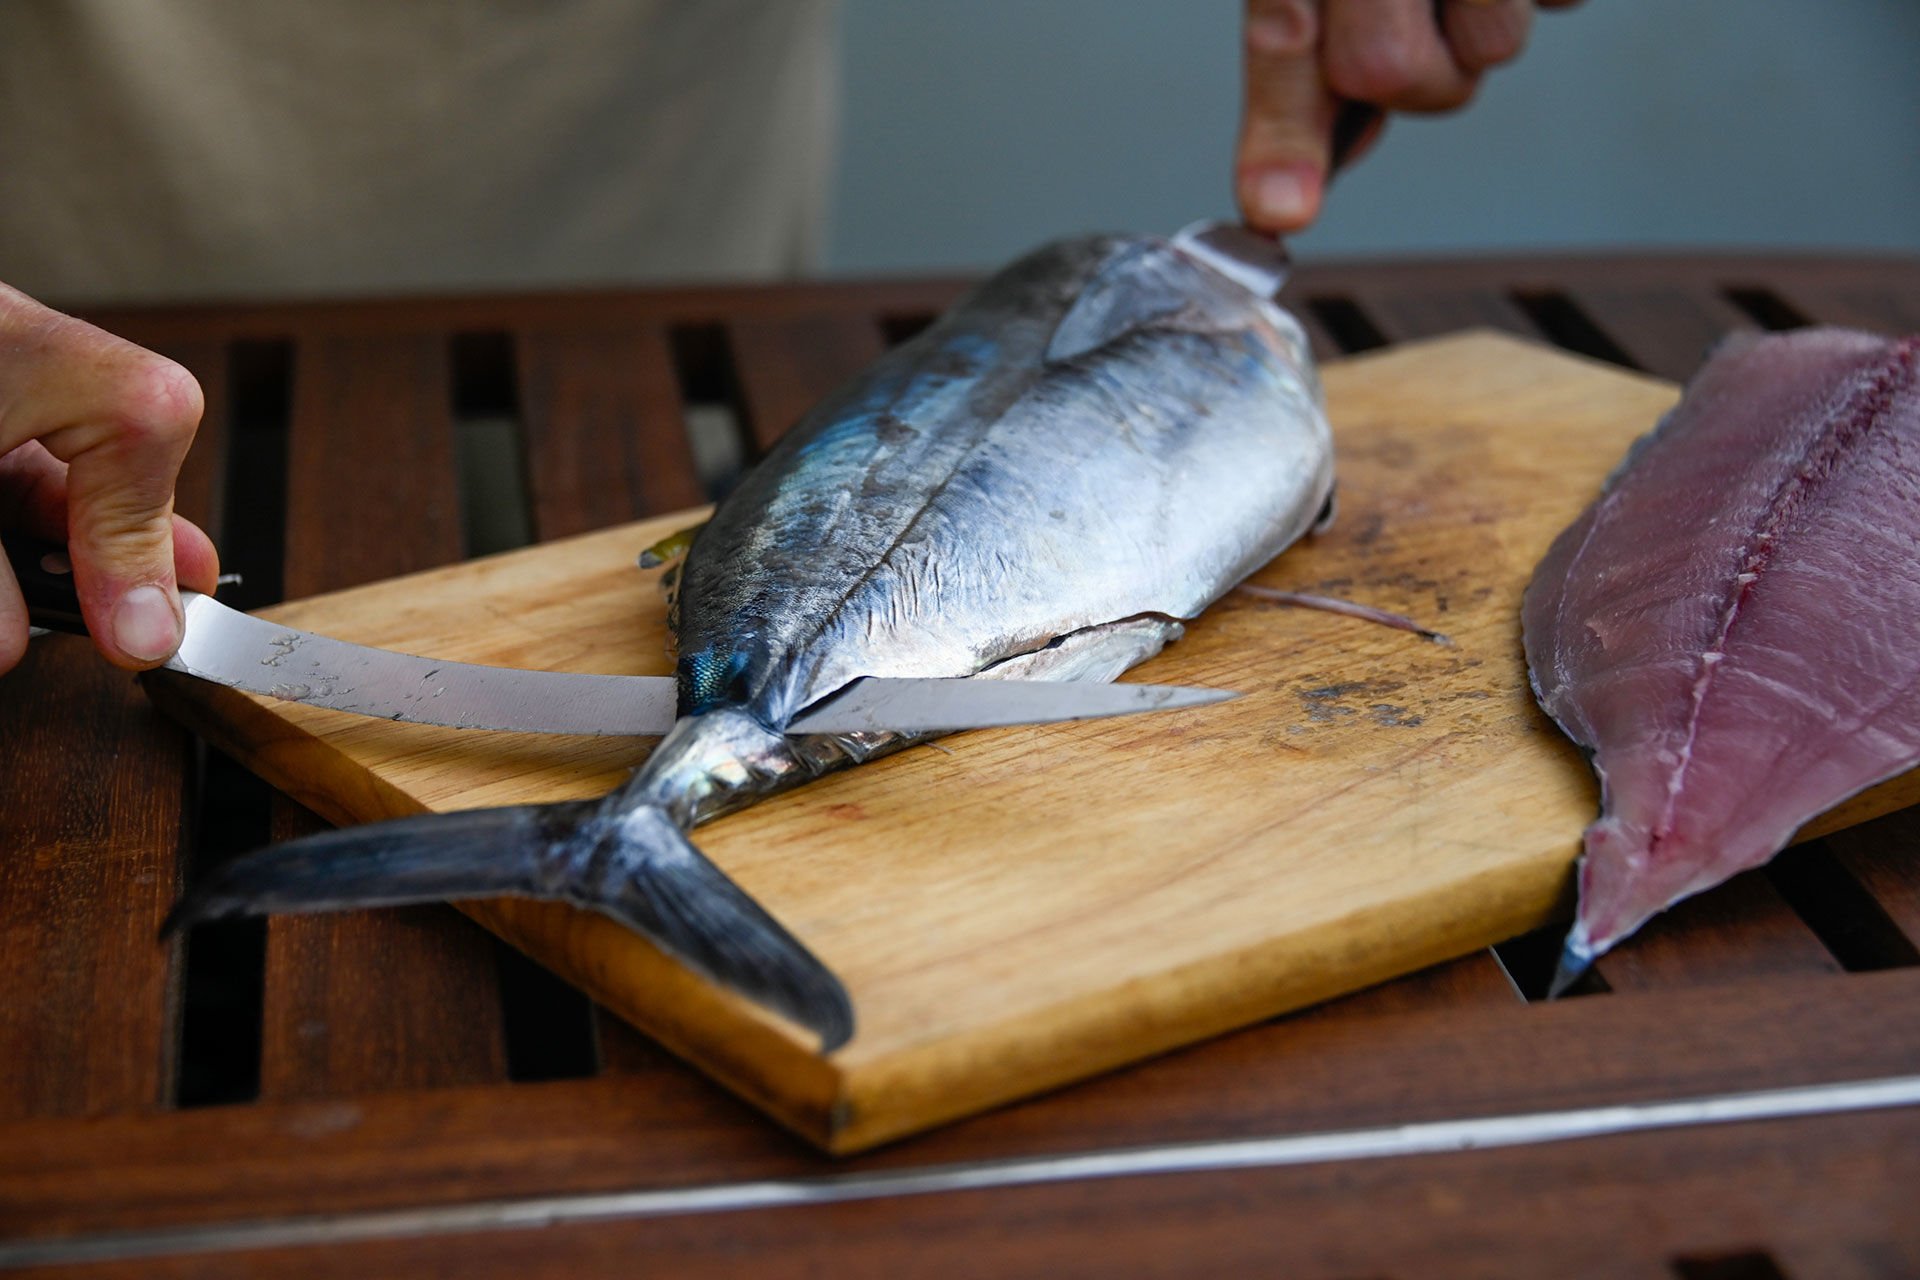  Diese Fische eignen sich hervorragend für rohen Konsum. Dazu werden die Filets herausgeschnitten.  